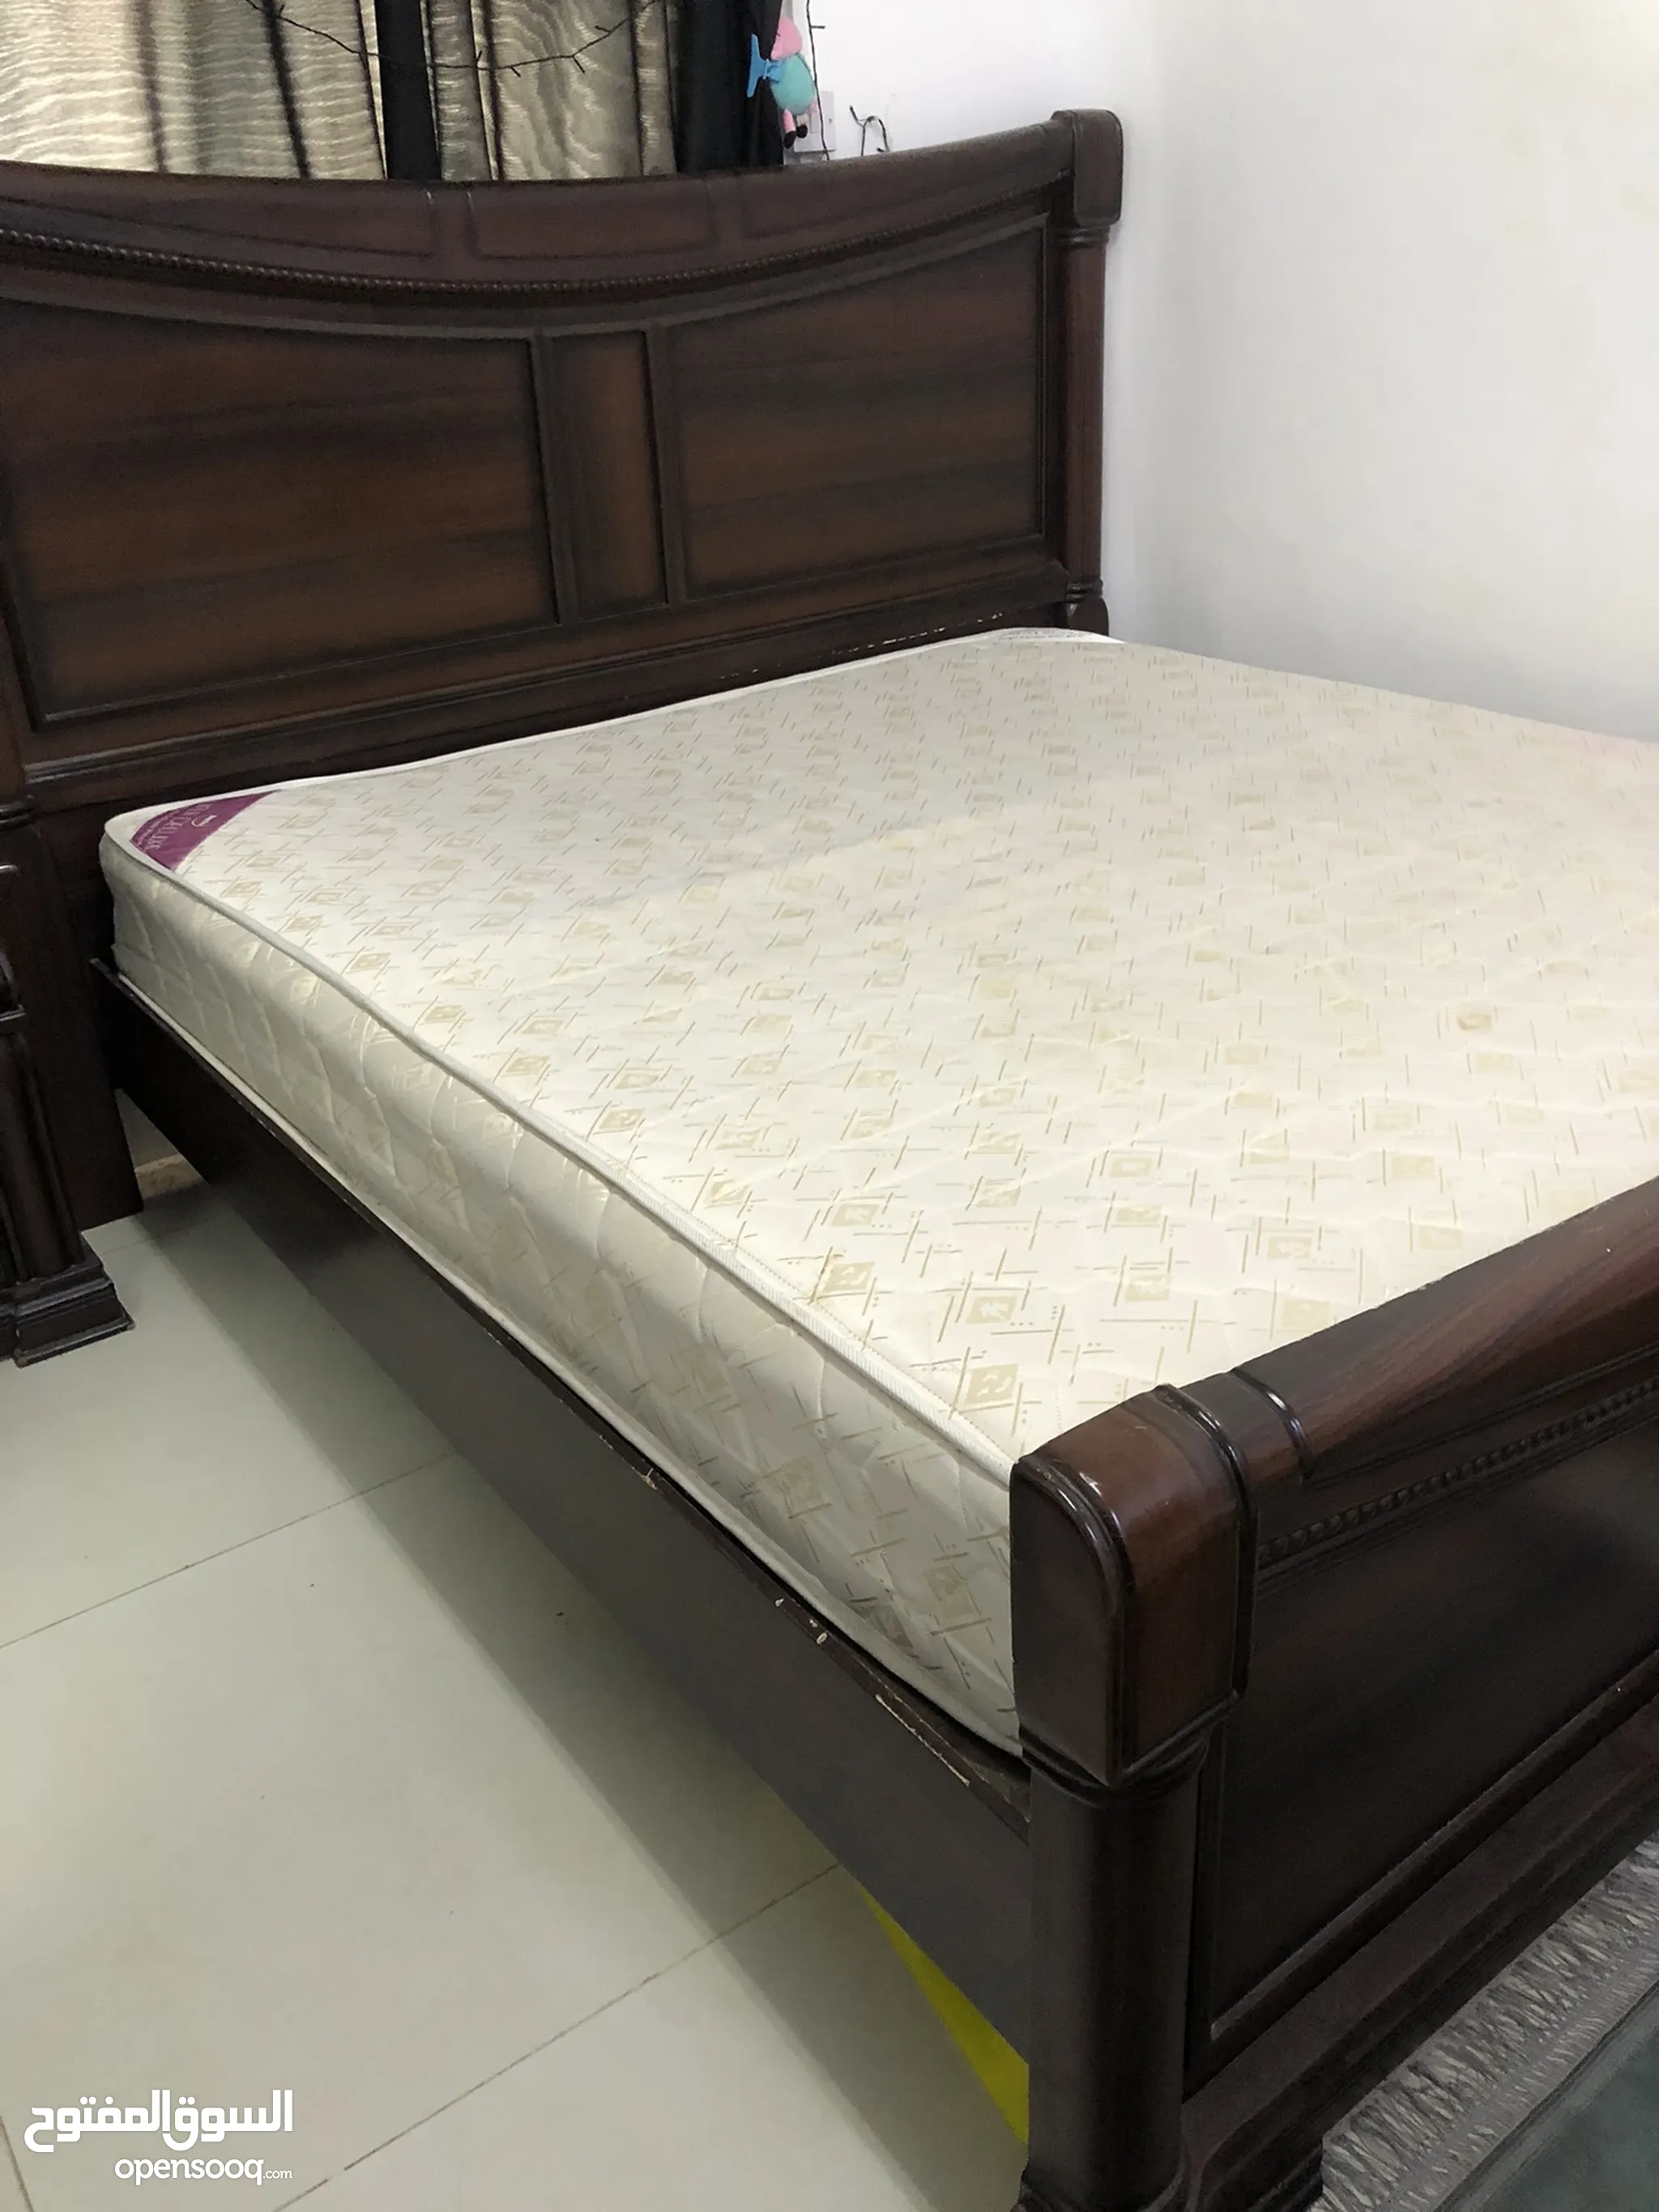 غرف نوم : سرير نوم للبيع : سرير دورين : سرير نفر ونص : سرير حديد وخشب :  ايكيا : ارخص الاسعار في الإمارات | السوق المفتوح